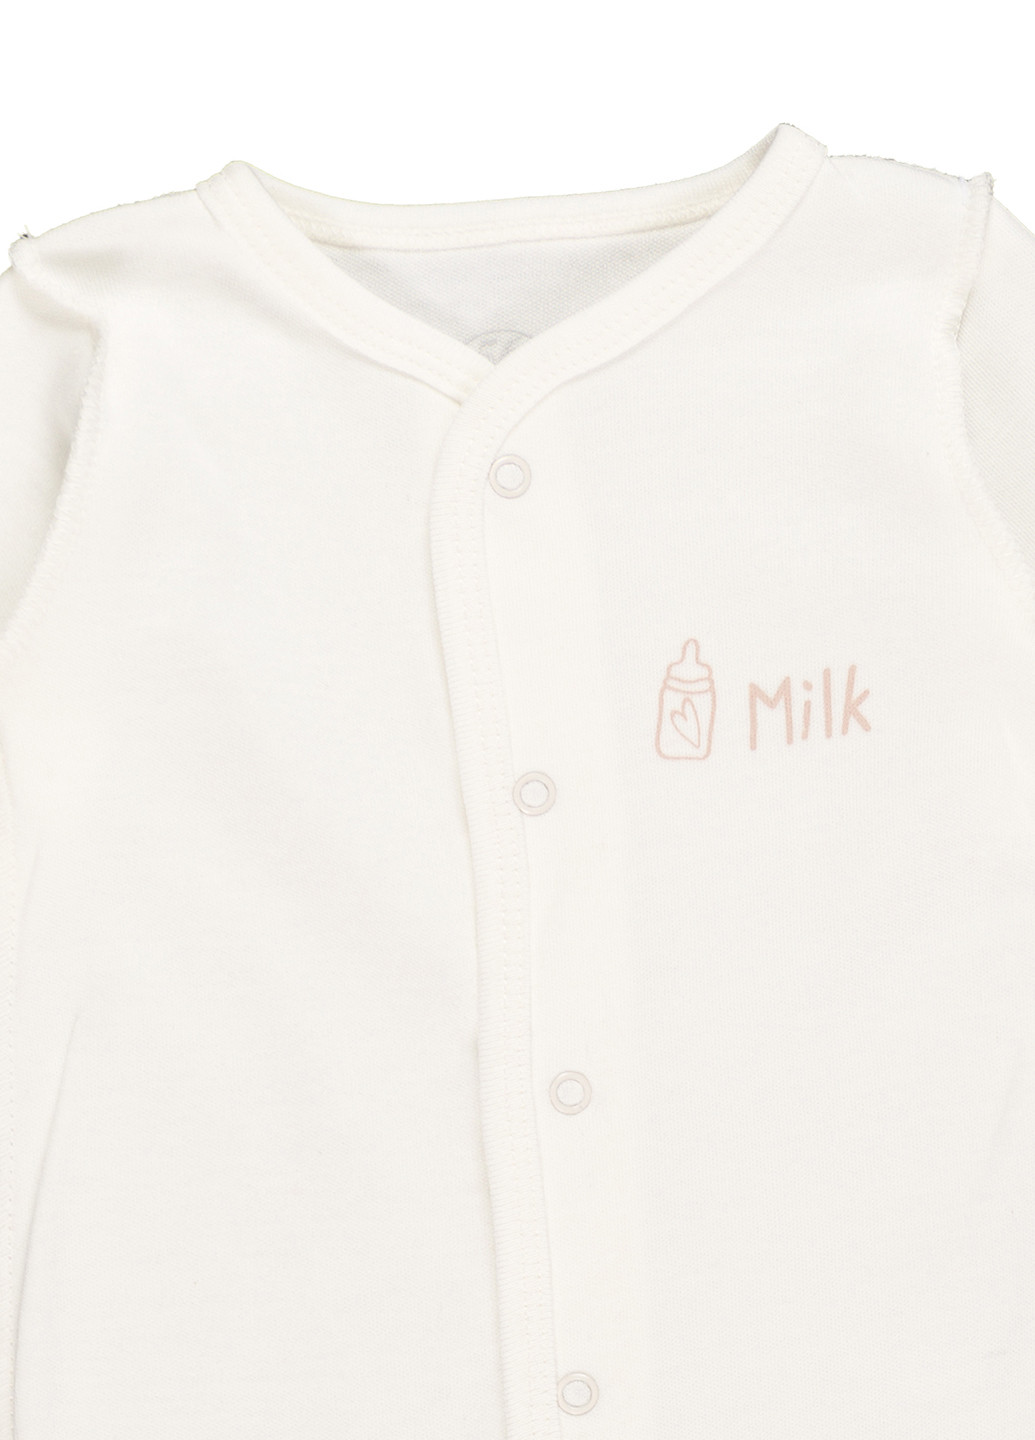 Человечек для новорожденных из натурального полотна Фламинго Текстиль однотонный молочный домашний хлопок